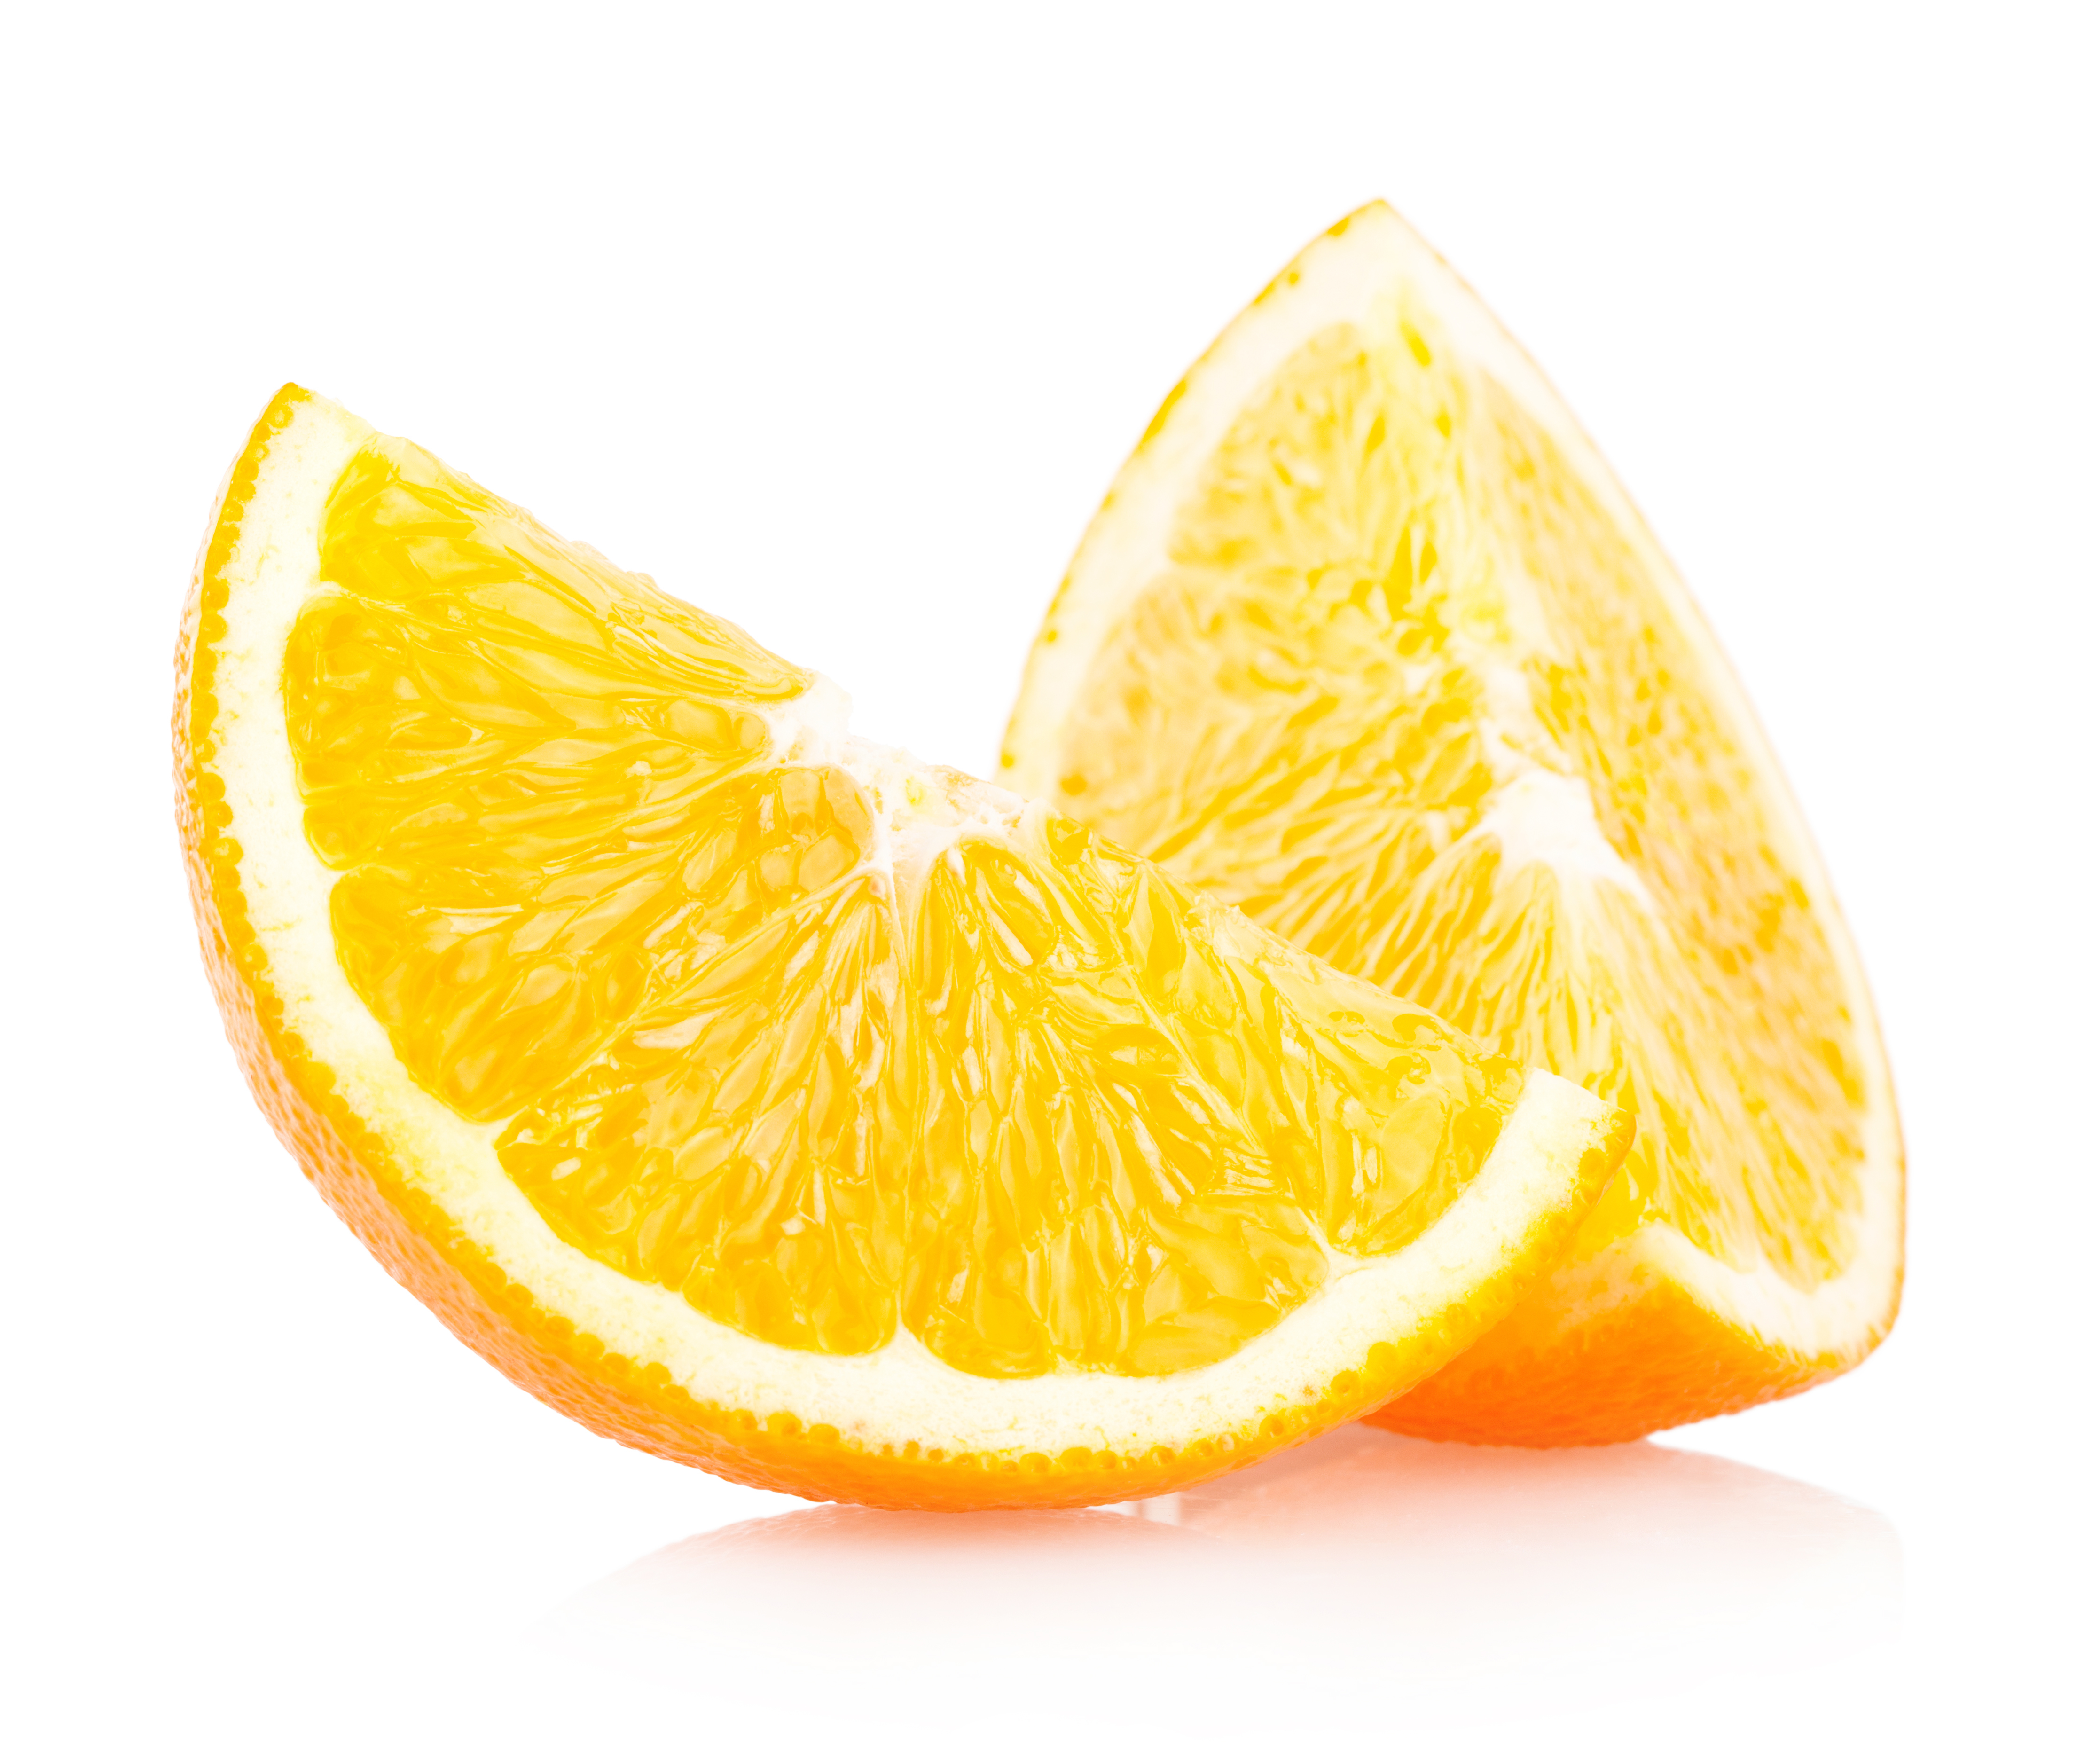 Juicy orange slices photo